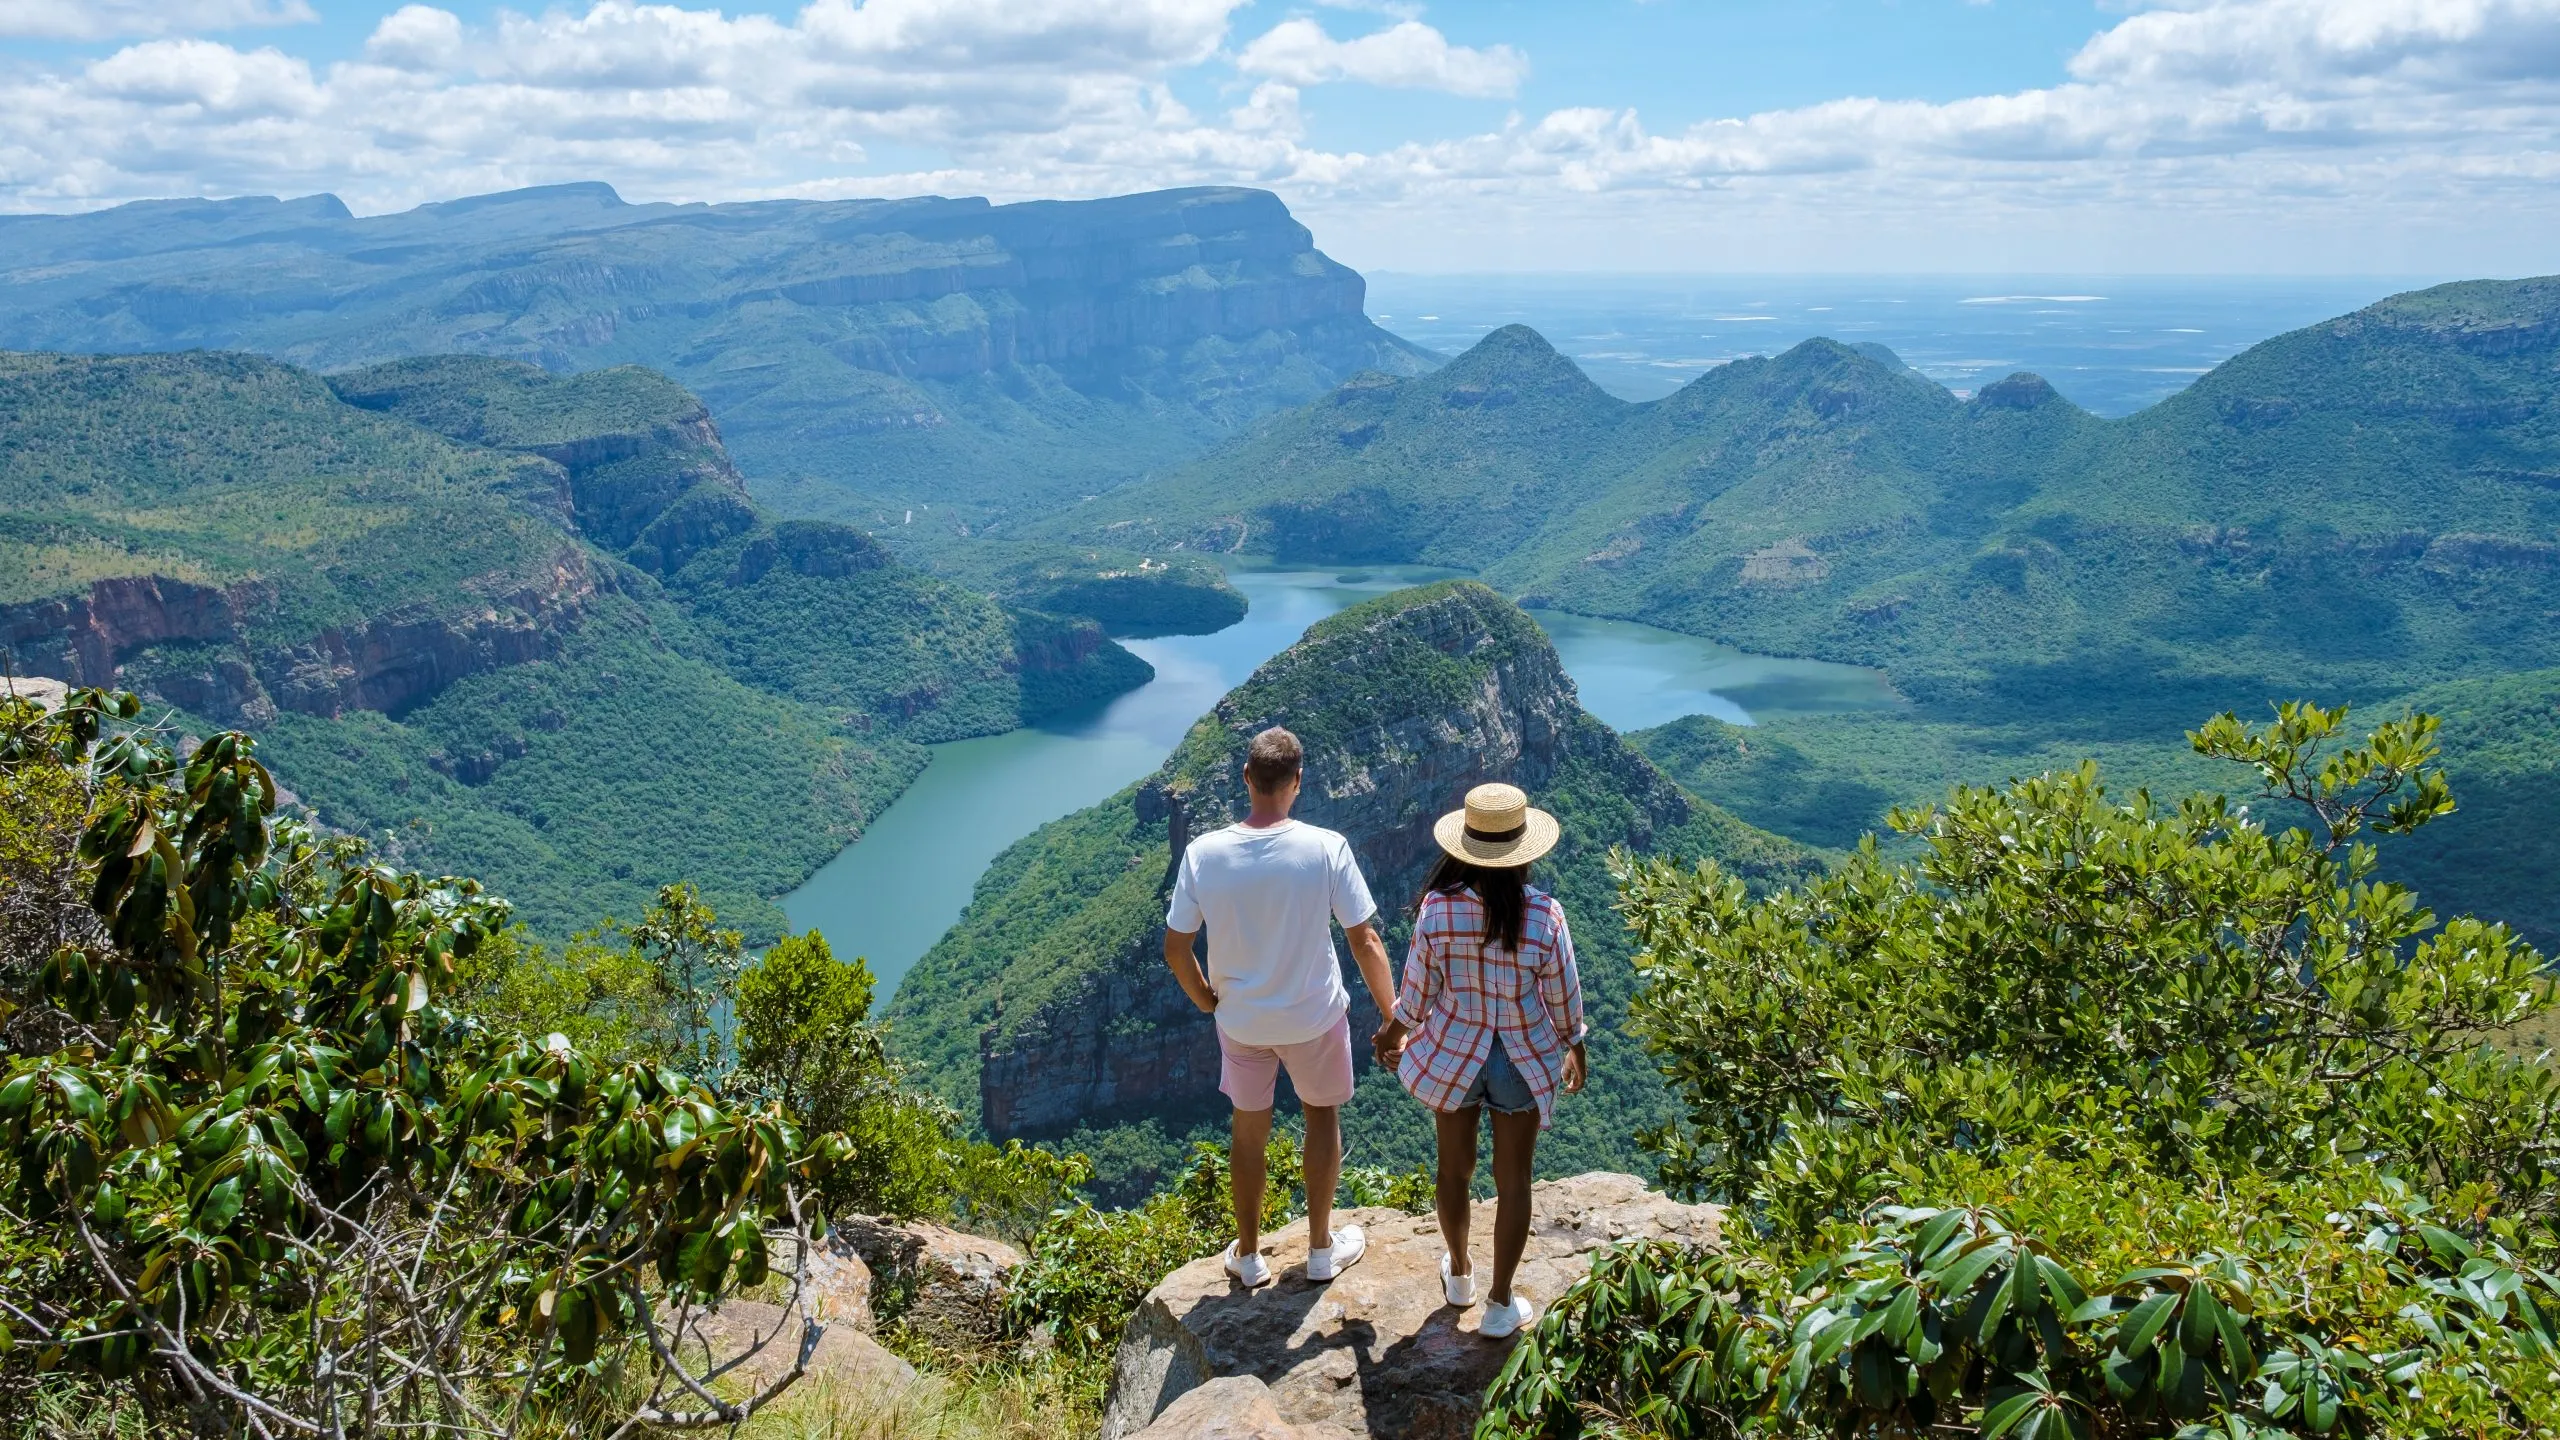 Panorama Route South Africa, Blyde river canyon med de tre rondavels, udsigt over tre rondavels og Blyde river canyon i Sydafrika. Asiatiske kvinder og kaukasiske mænd på ferie i Sydafrika